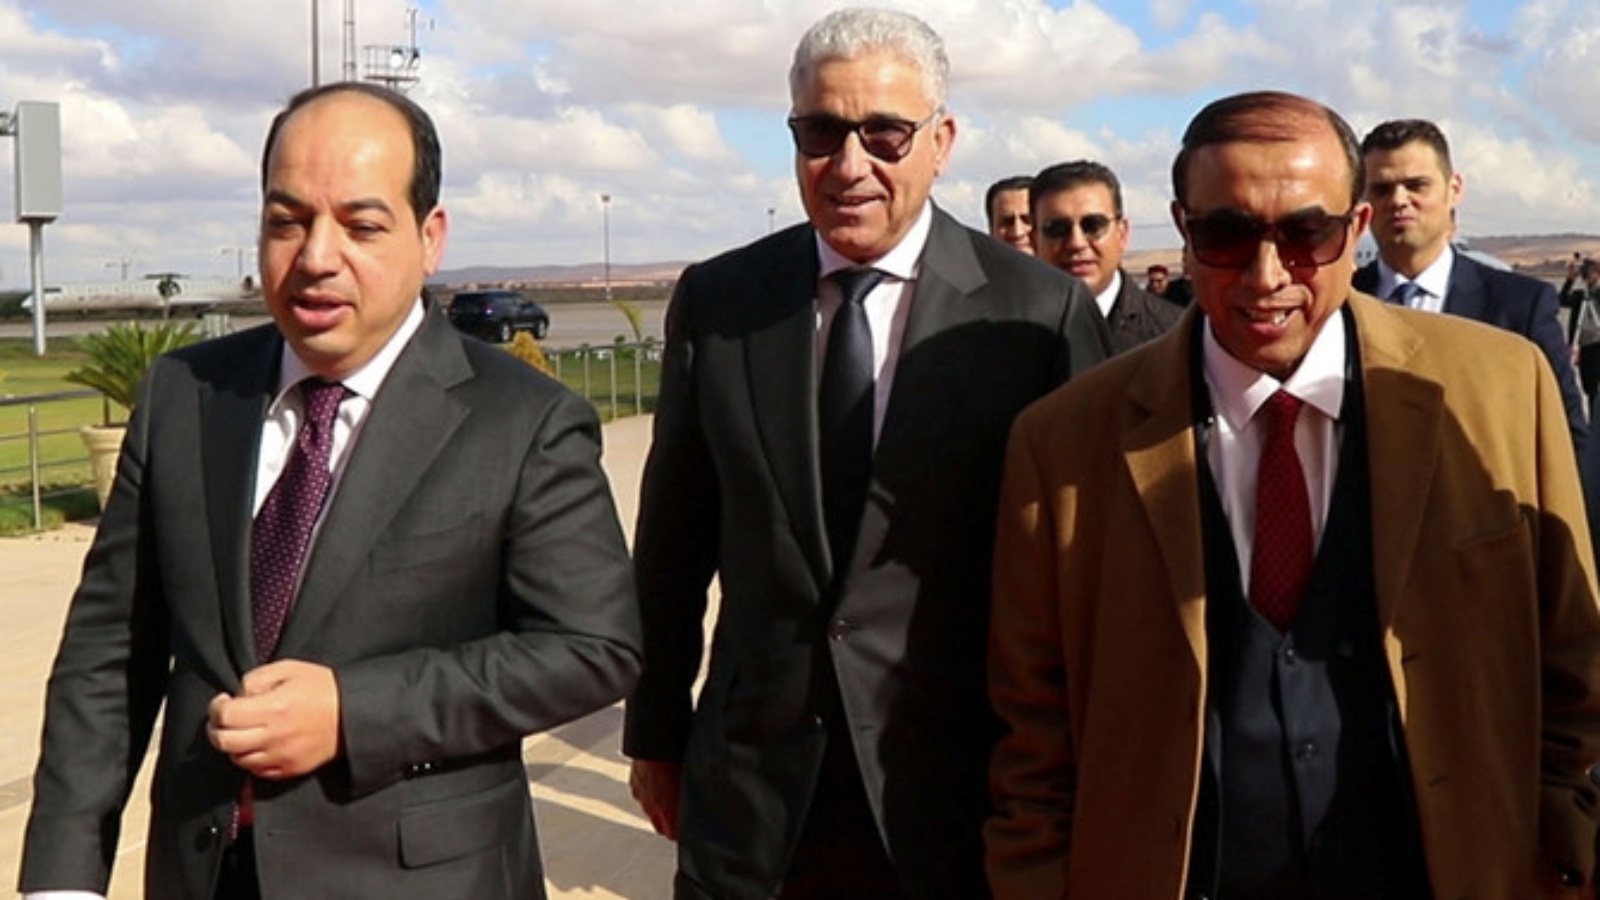 المرشحان الرئاسيان الليبيان أحمد معيتيق (إلى اليسار) وفتحي باشاغا (وسط) يصلان للقاء قائد الجيش في شرق ليبيا خليفة حفتر، في مدينة بنغازي الشرقية. في 21 كانون الأول/ديسمبر 2021.